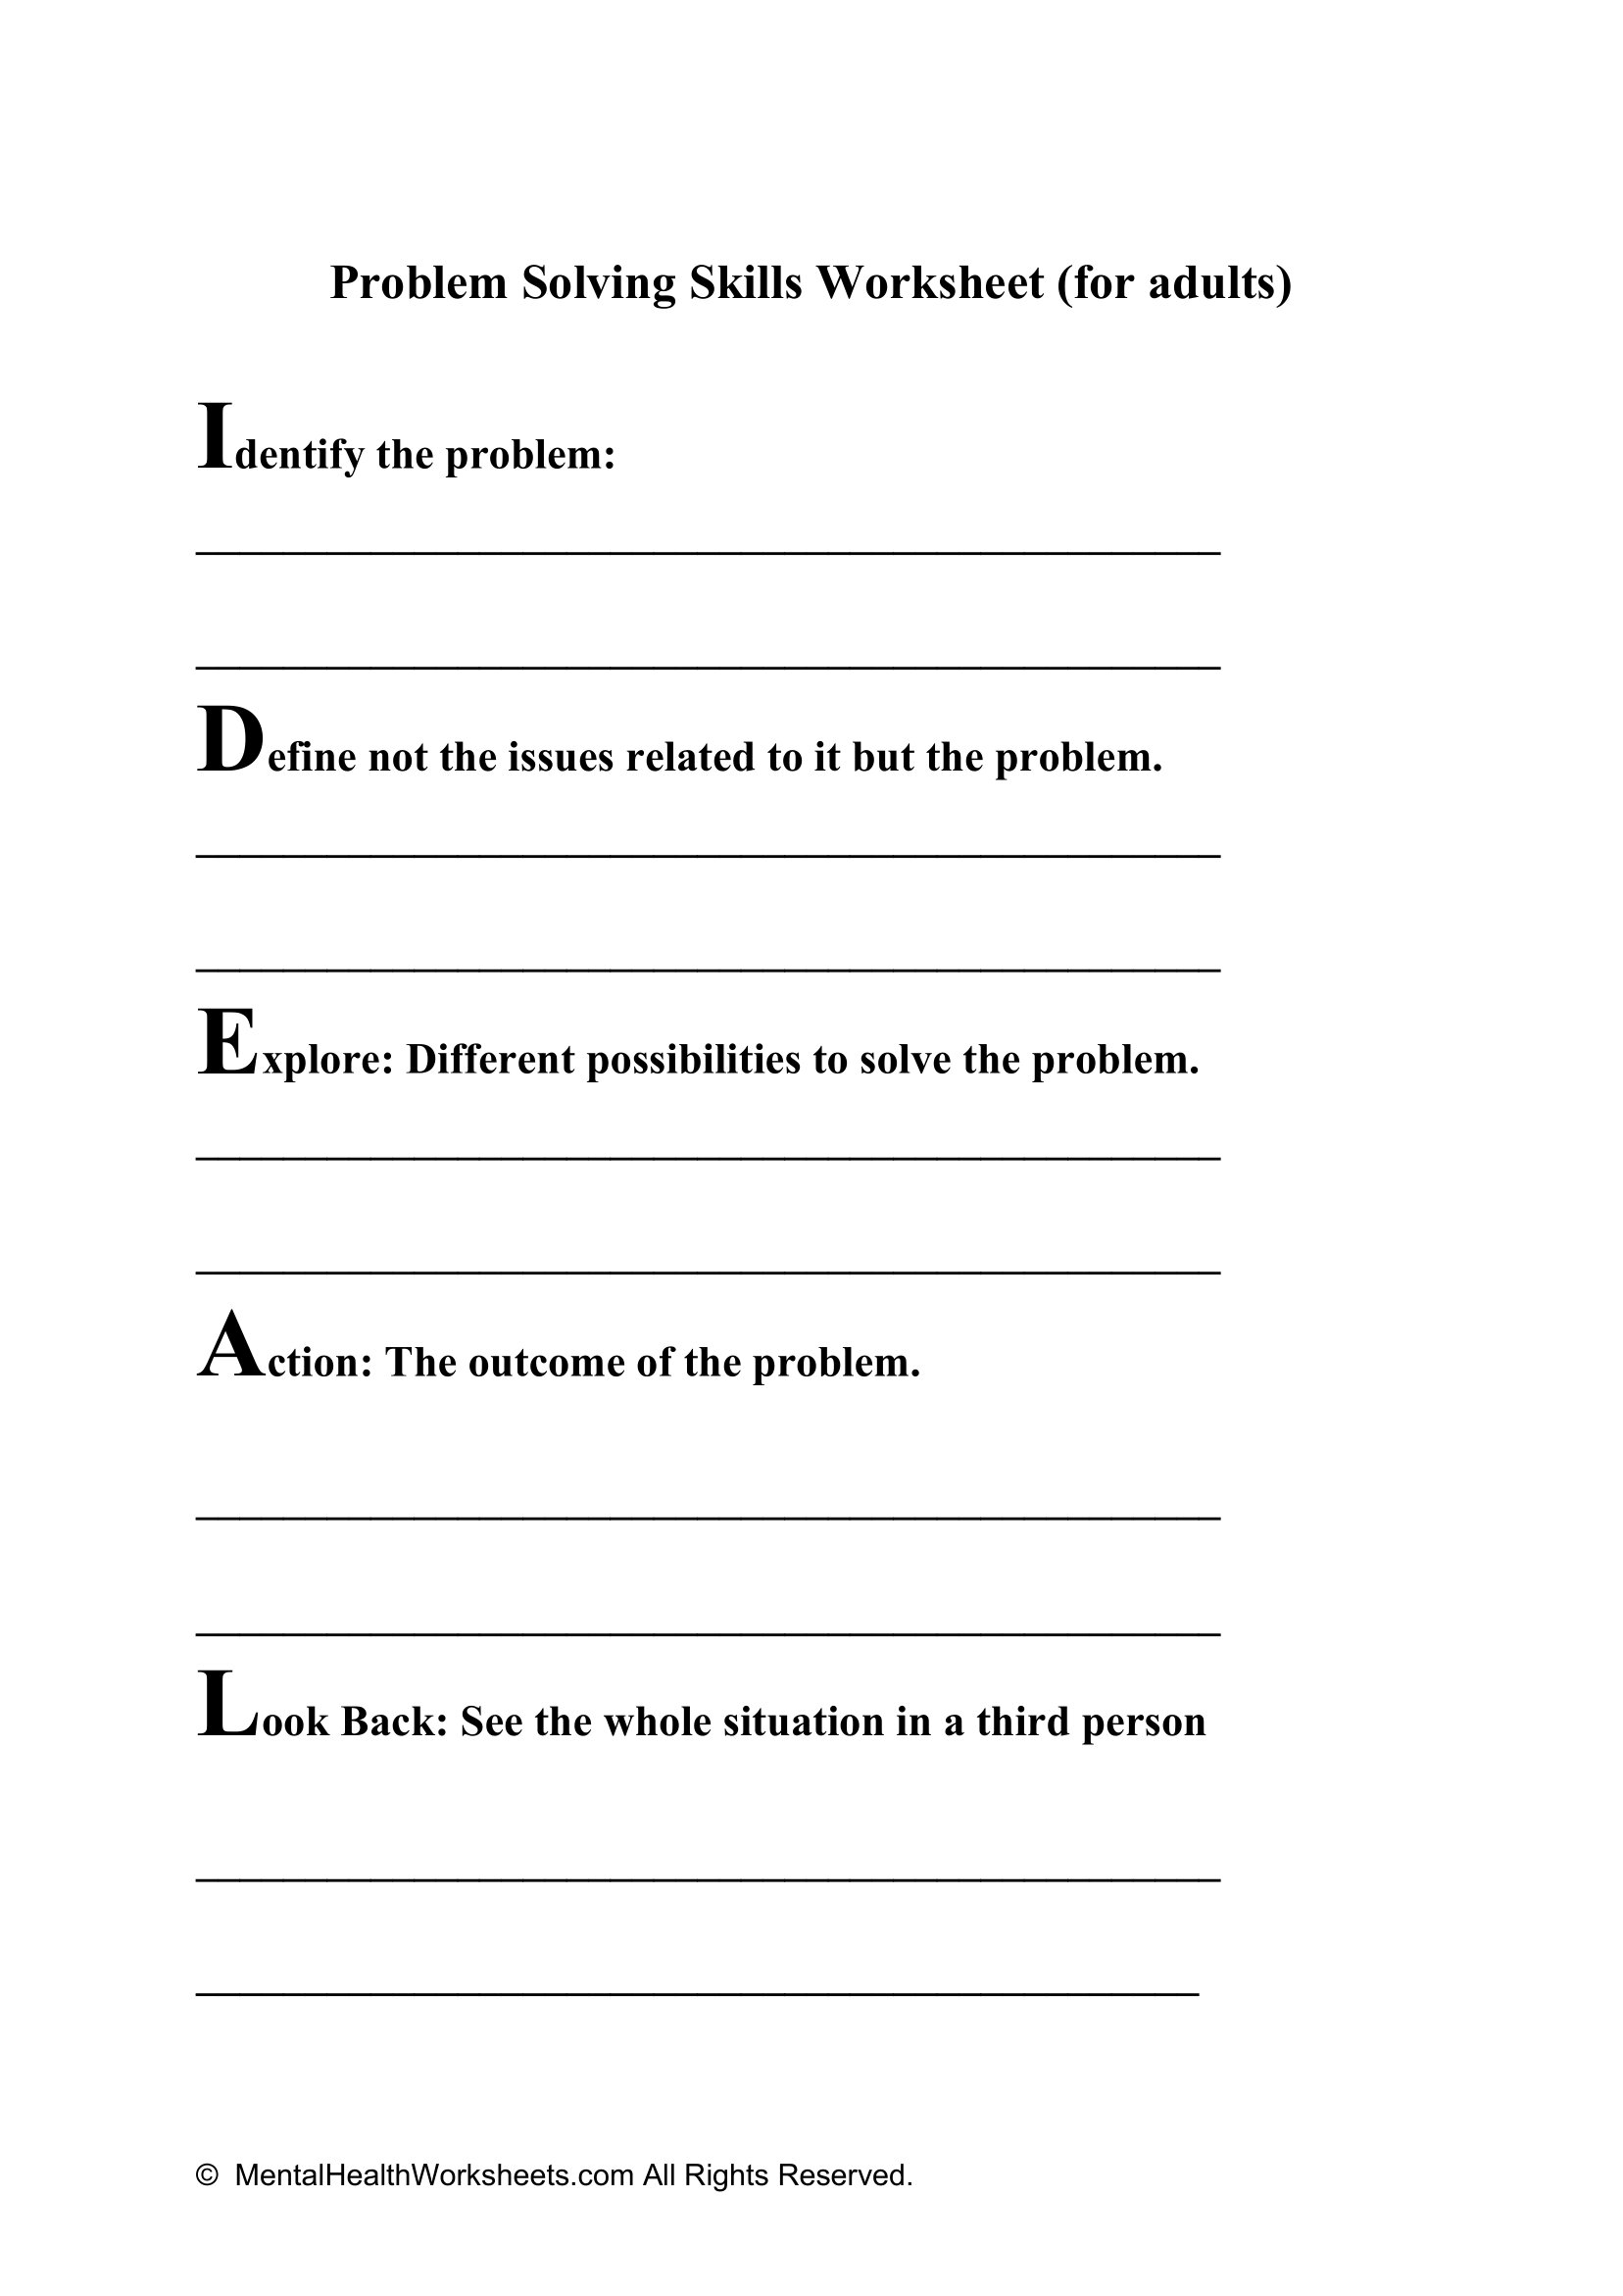 problem solving worksheet adults